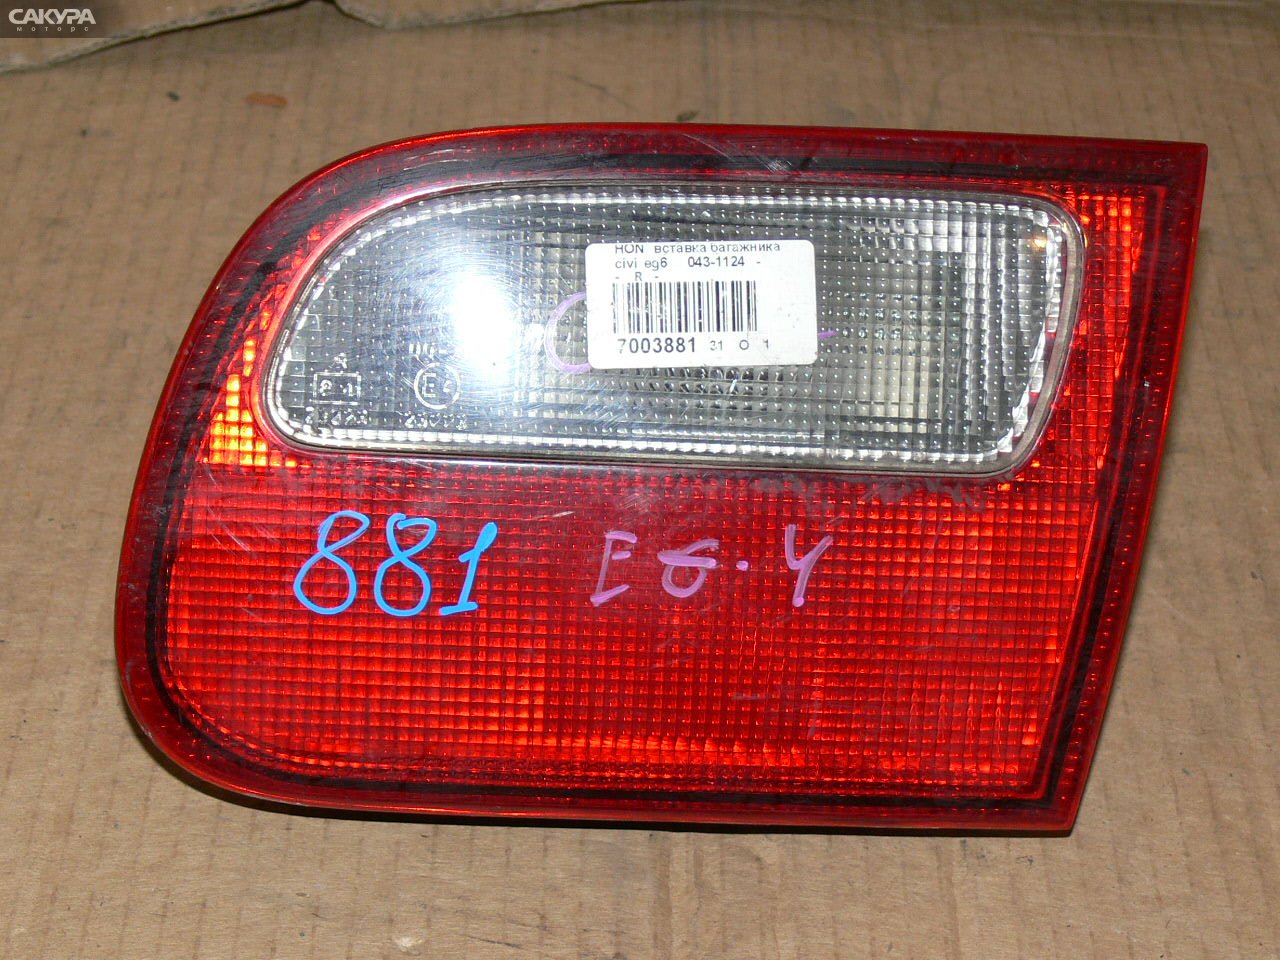 Фонарь вставка багажника правый Honda Civic EG6 043-1124: купить в Сакура Иркутск.